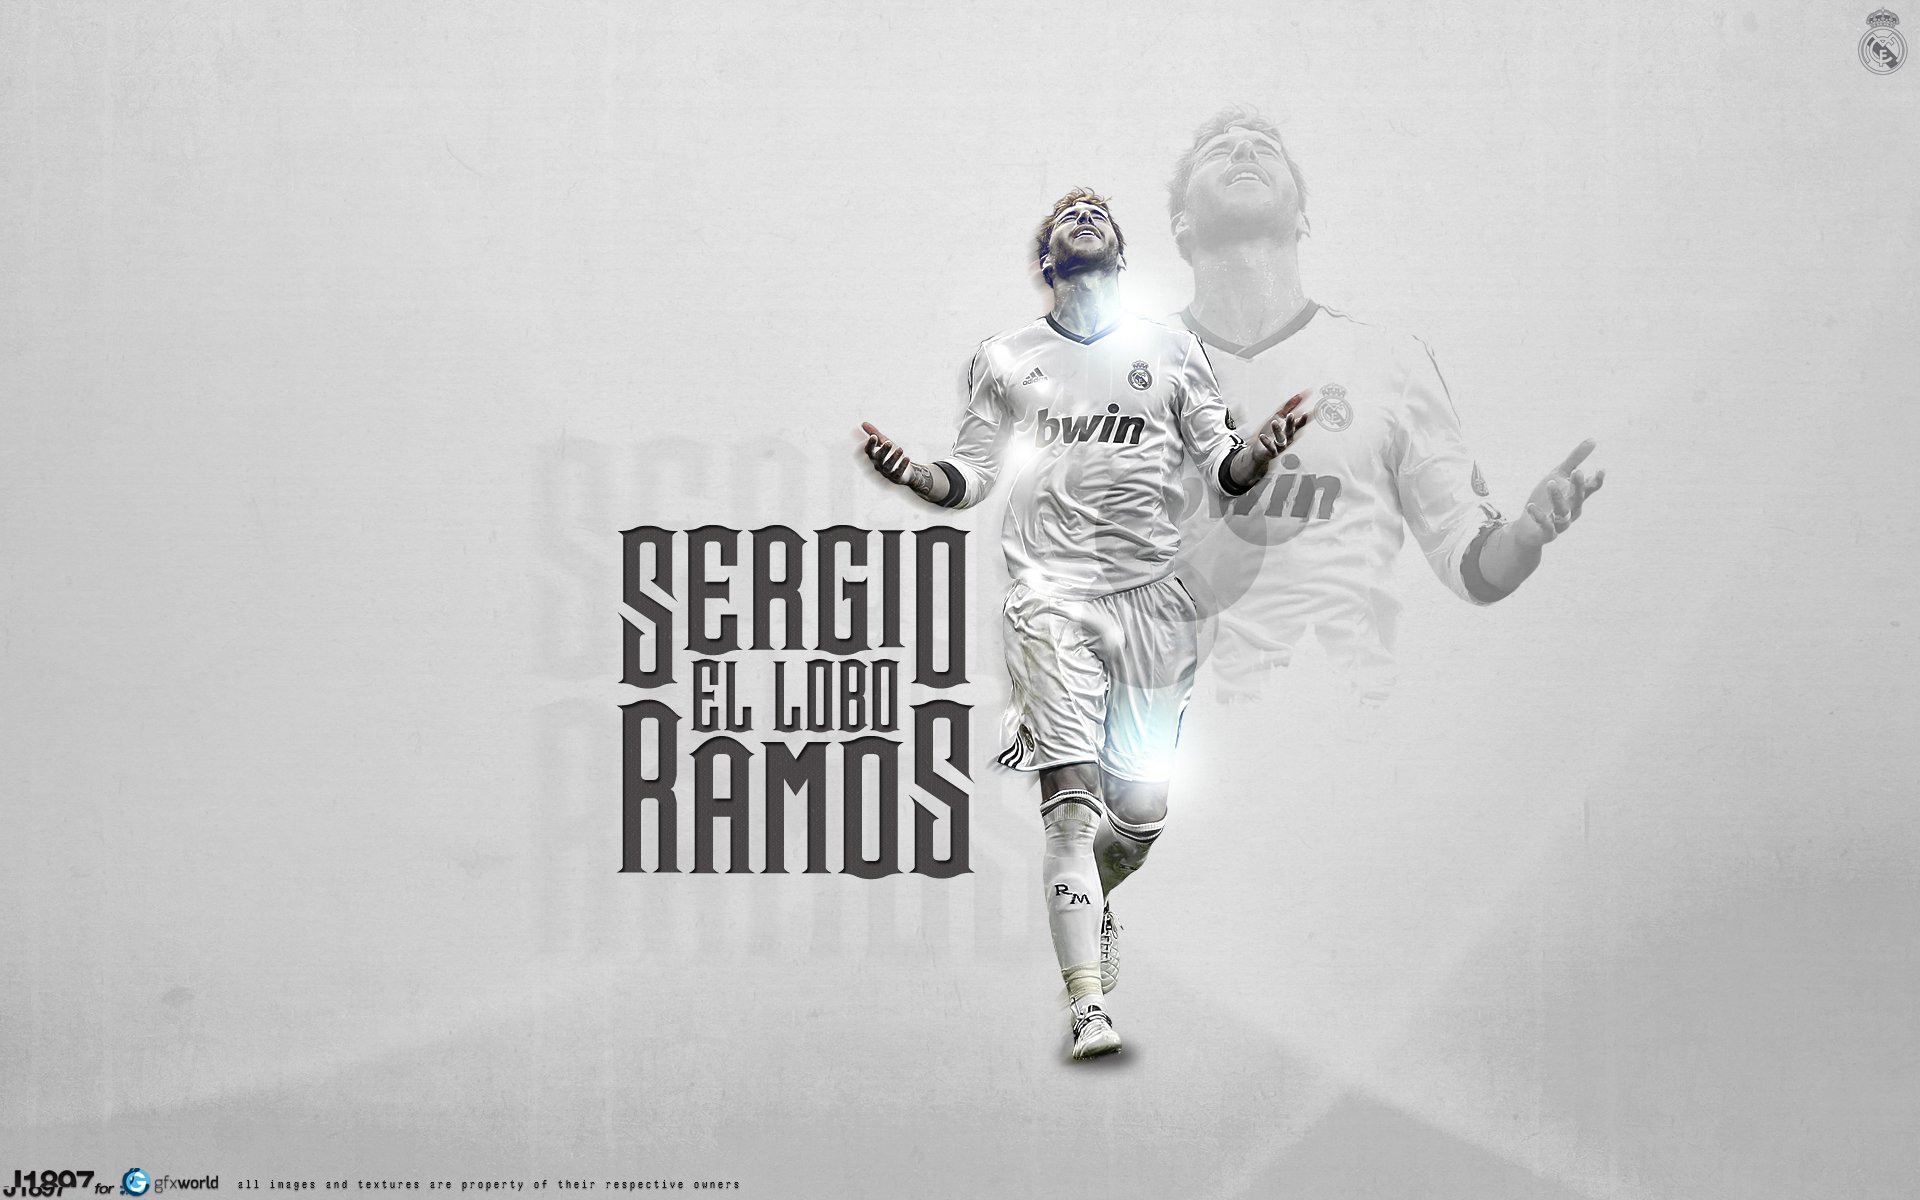 Với tên tuổi danh tiếng trong làng bóng đá, Sergio Ramos luôn là nhân vật được các fan hâm mộ săn đón. Những hình ảnh của anh là nơi thể hiện tài năng, sự nghiệp đầy thành tích và phong thái quyến rũ.